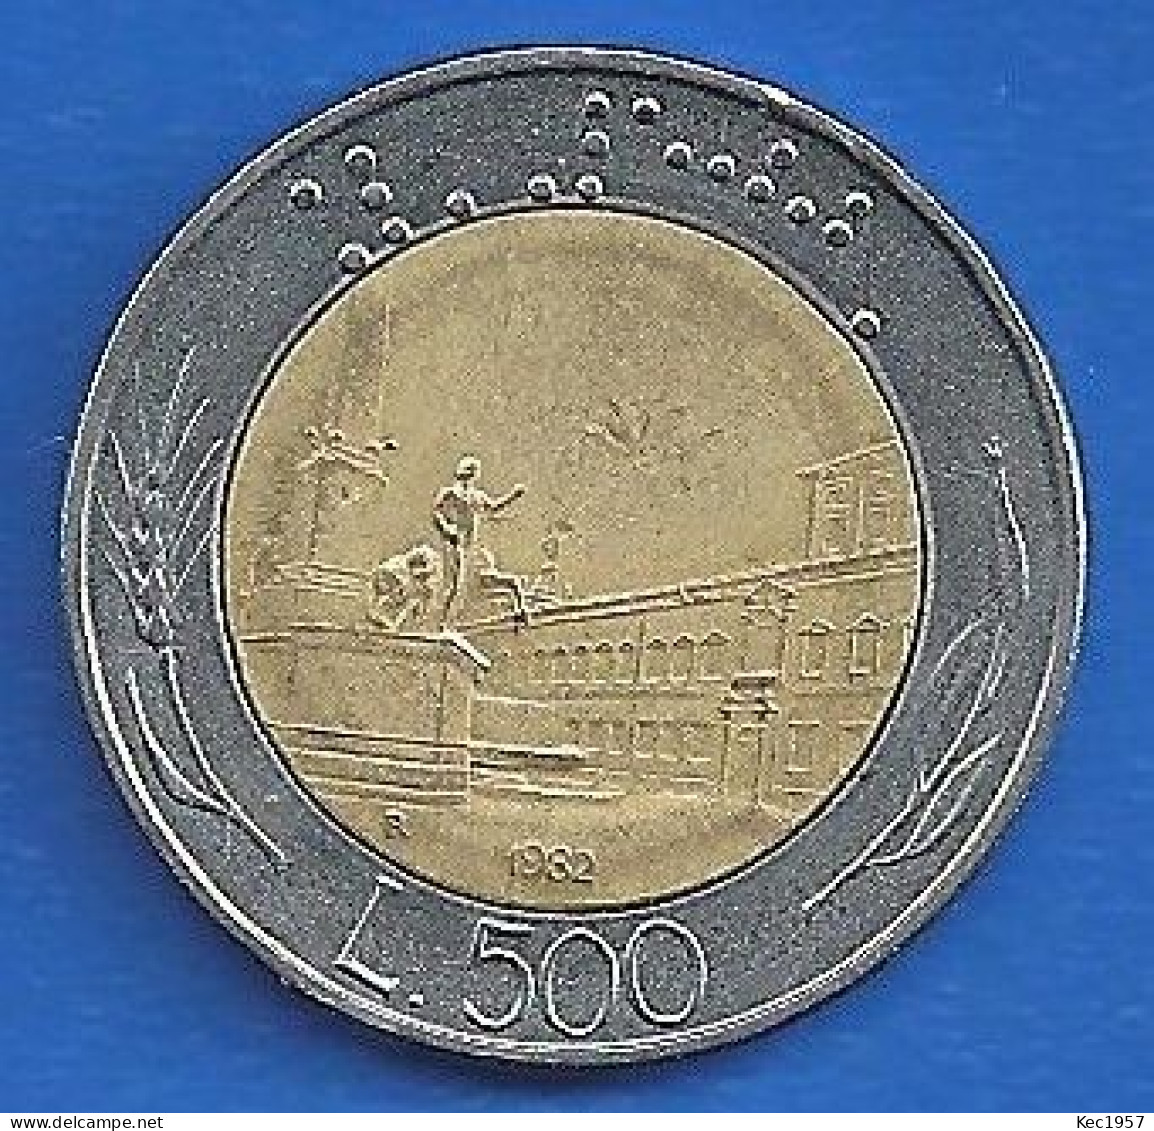 Italienische 500 Lire Munze 1982,um 180 Grad Gedreht. - 500 Lire